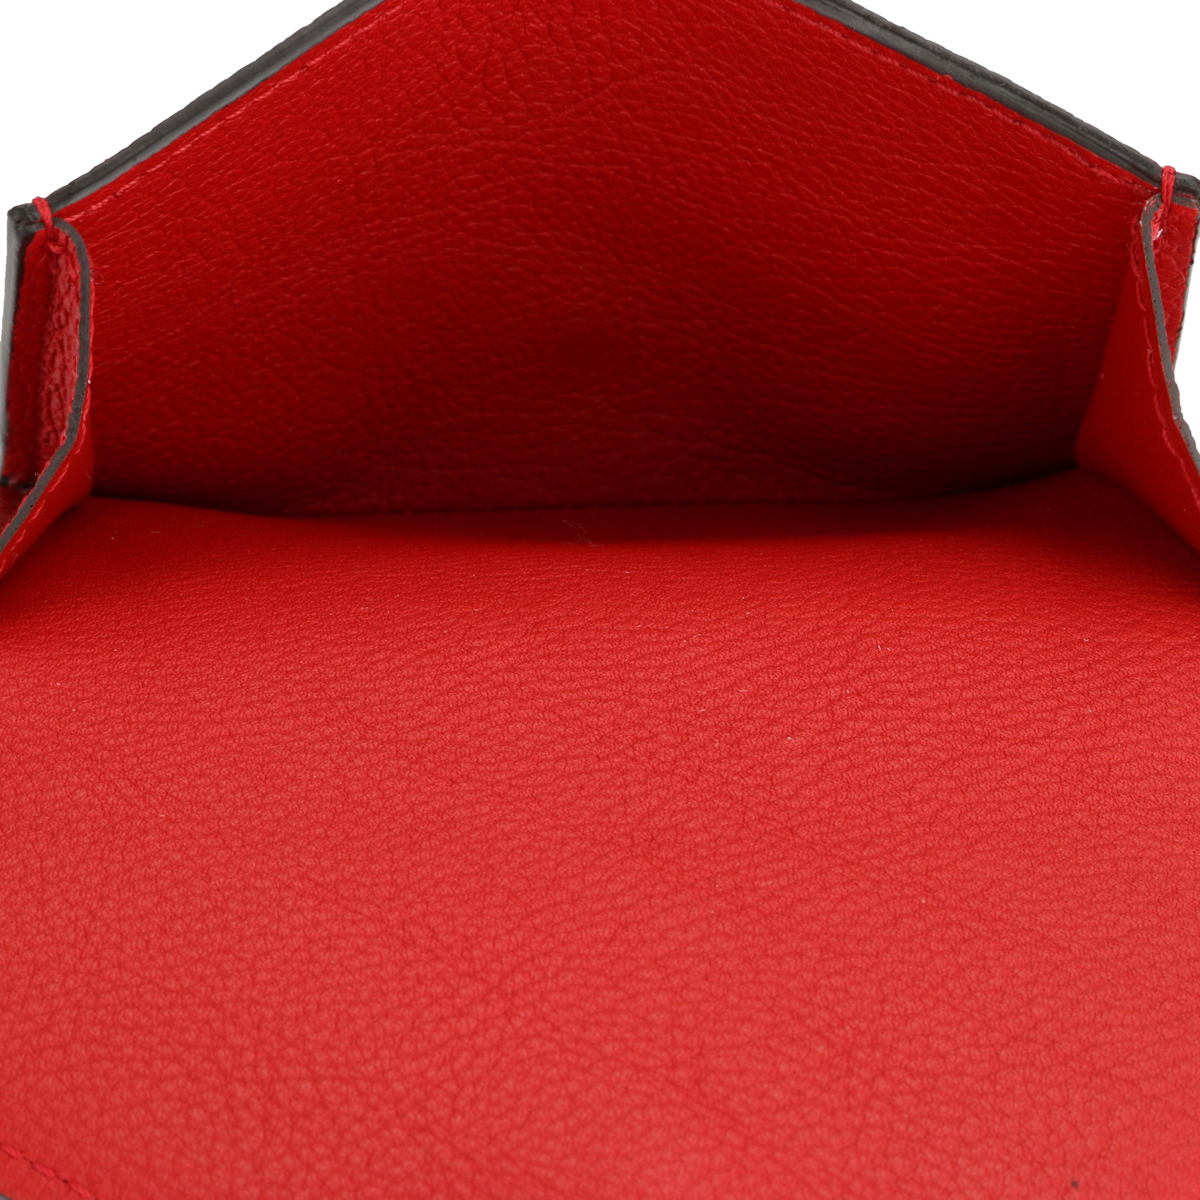 Louis Vuitton Double V Compact Wallet Monogram Canvas Rubis Leather 2018 - BoutiQi Bags